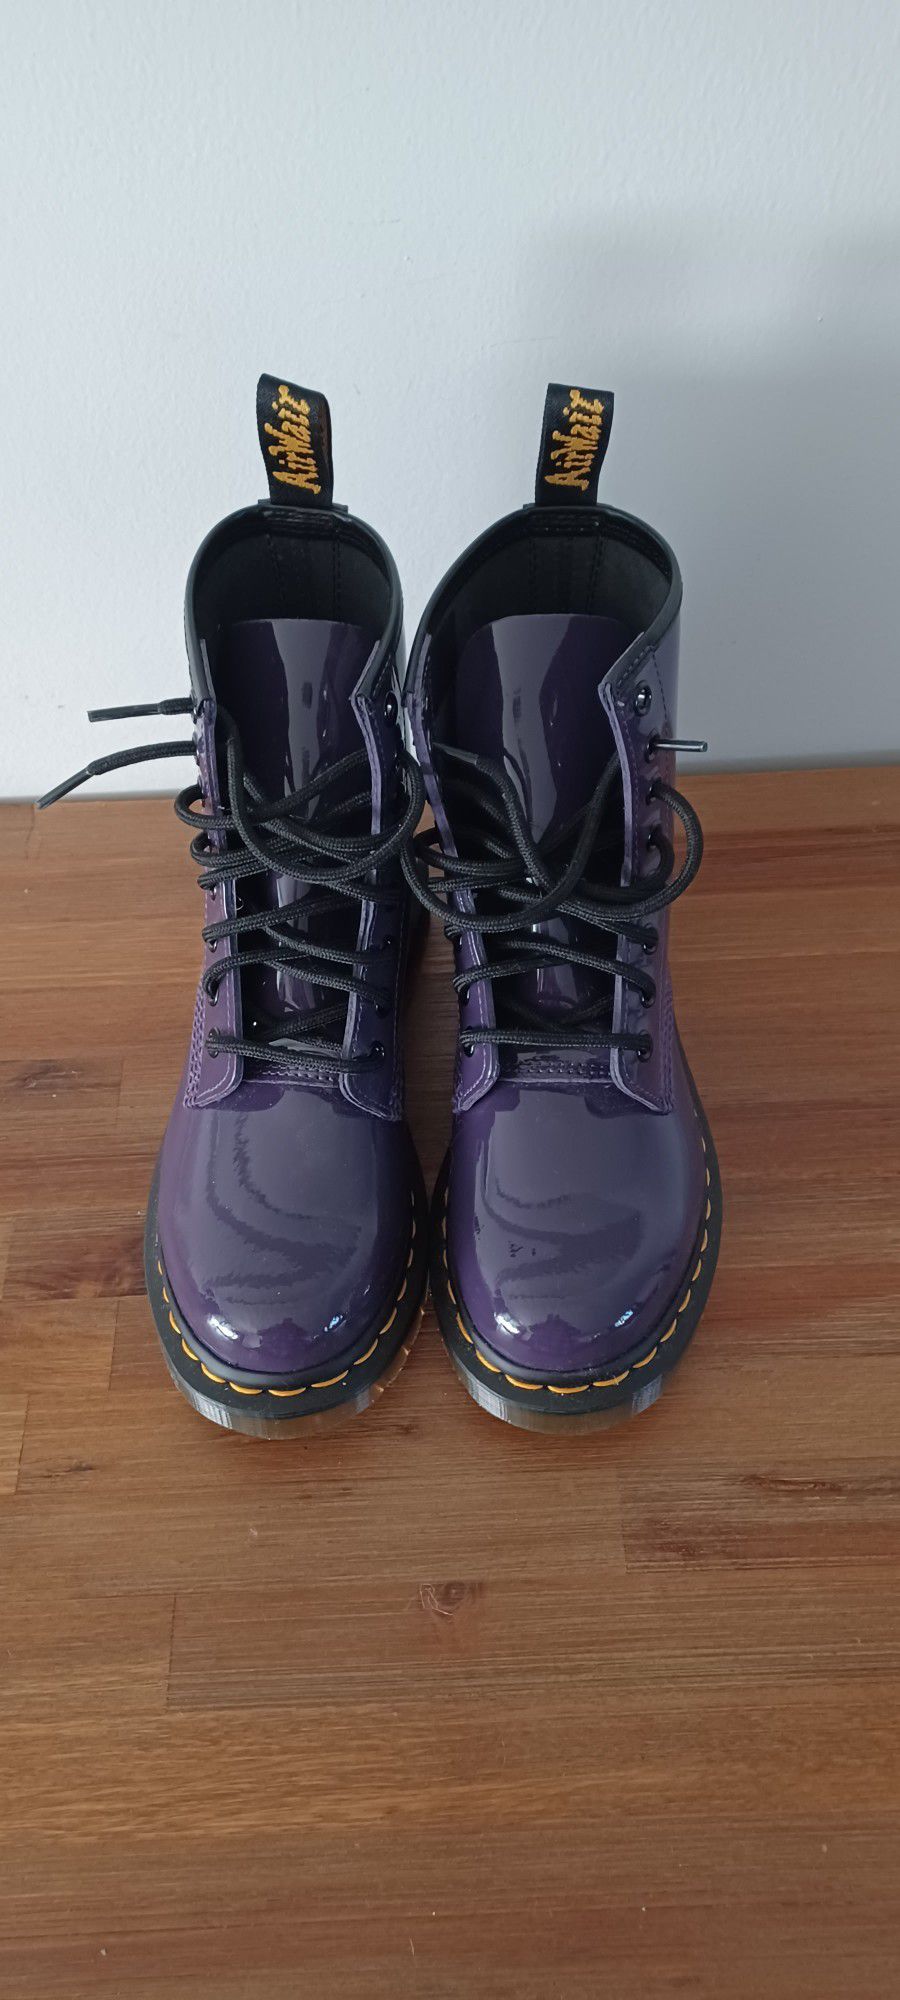 DR. MARTENS Purple
Patent Leather Combat Boots